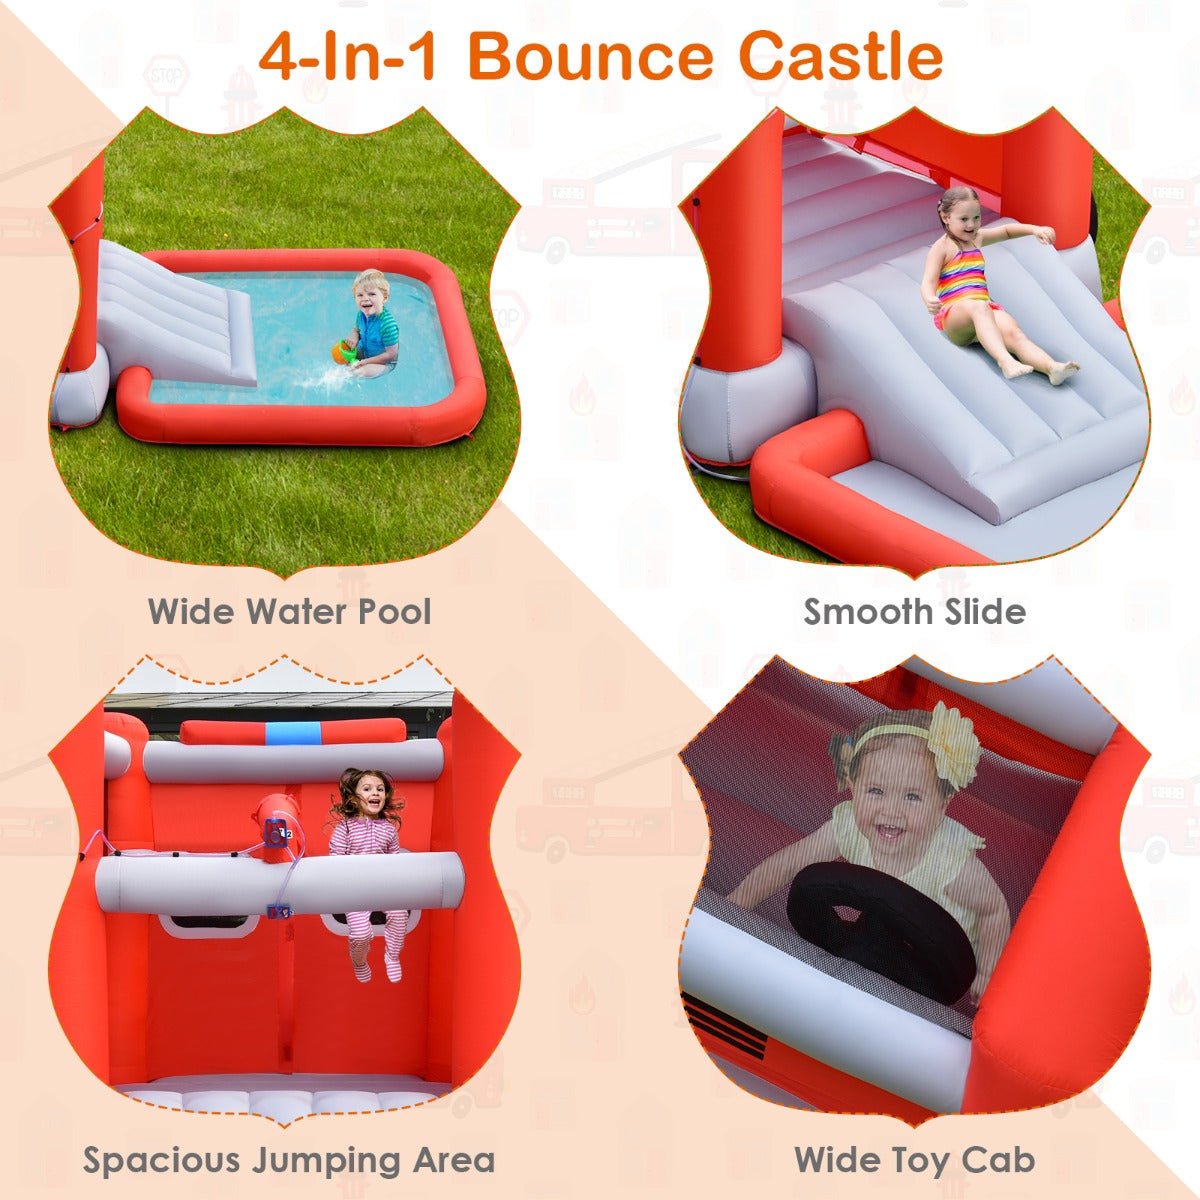 Firefighter-Themed Splash Pool Slide for Kids - Dive into Joyful Playtime